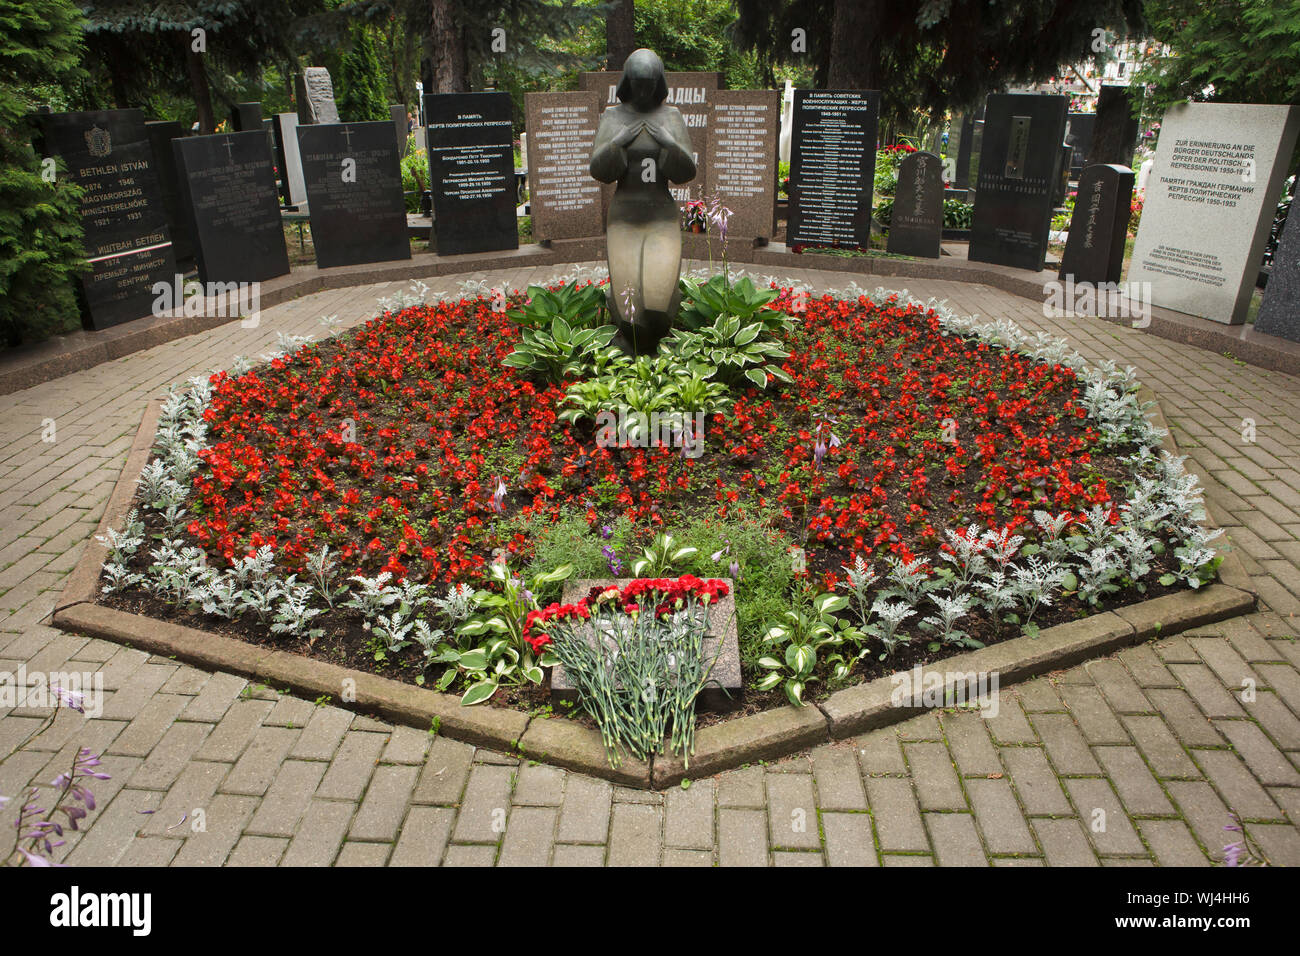 Tombe commune des cendres non réclamées numéro trois, où les gens exécutés par le NKVD ont été secrètement enterré de 1945 à 1953, à l'Donskoye cimetière à Moscou, Russie. Il est estimé que le charnier contient le reste des membres du Comité juif antifasciste, prisonniers de guerre japonais, atamans Cosaques Piotr Krasnov et Andrei Shkuro, ainsi de la demeure des chefs militaires de l'Armée de libération russe (OAK) pendant la Seconde Guerre mondiale, les généraux : Andrey Vlasov, Fiodor Truhin et Sergei Bunyachenko exécuté en 1946. Demeure du célèbre chef de la police secrète soviétique Lav Banque D'Images